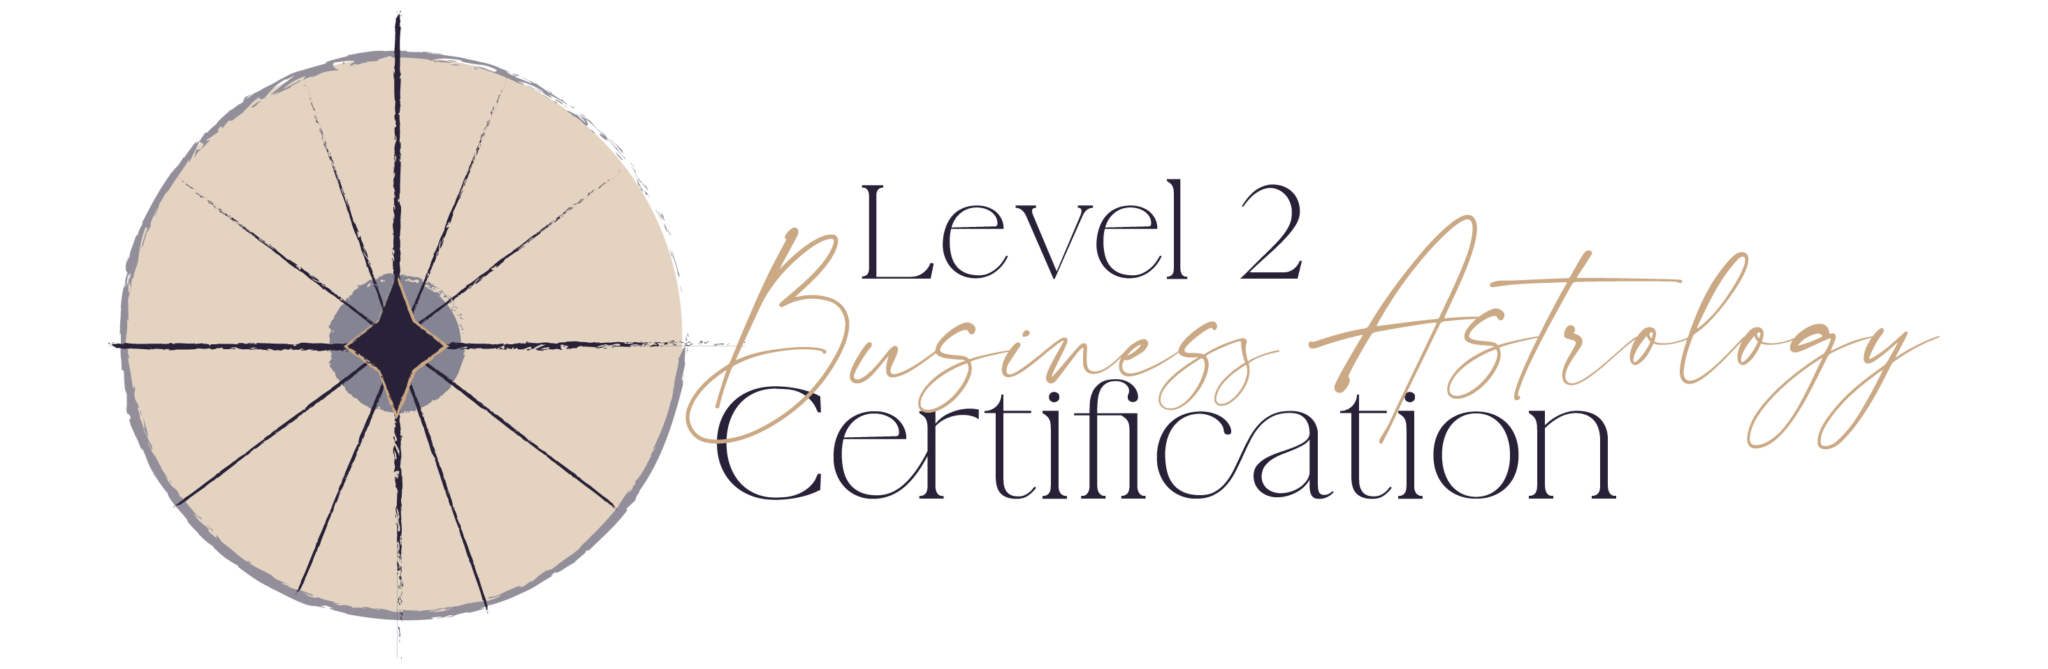 Level 2 logo